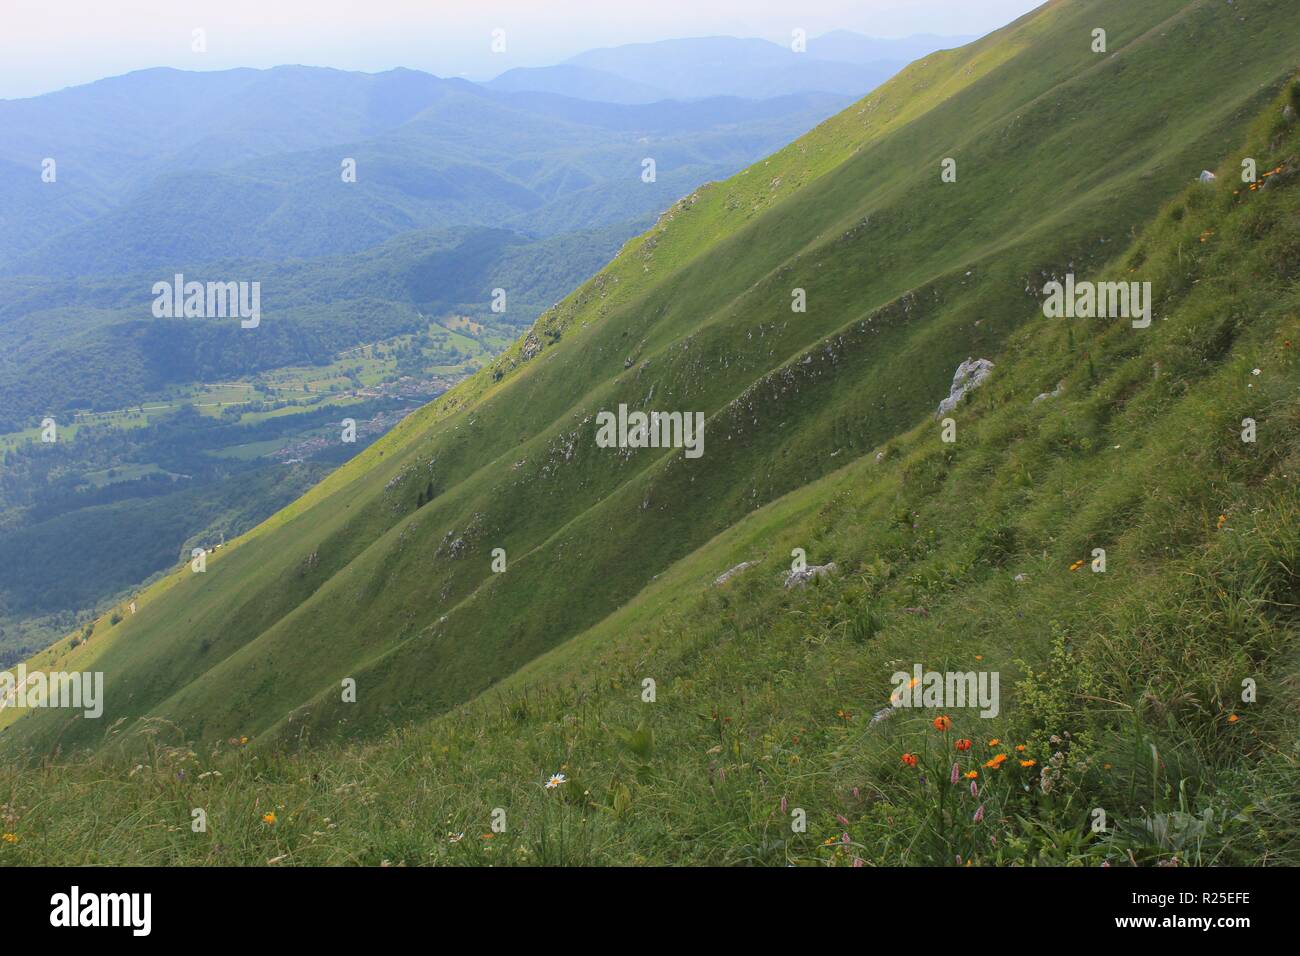 Alpine abruptes pentes du mont Kobariski Stol, Alpes Juliennes, Alpe Adria Trail, la Slovénie, l'Europe centrale Banque D'Images